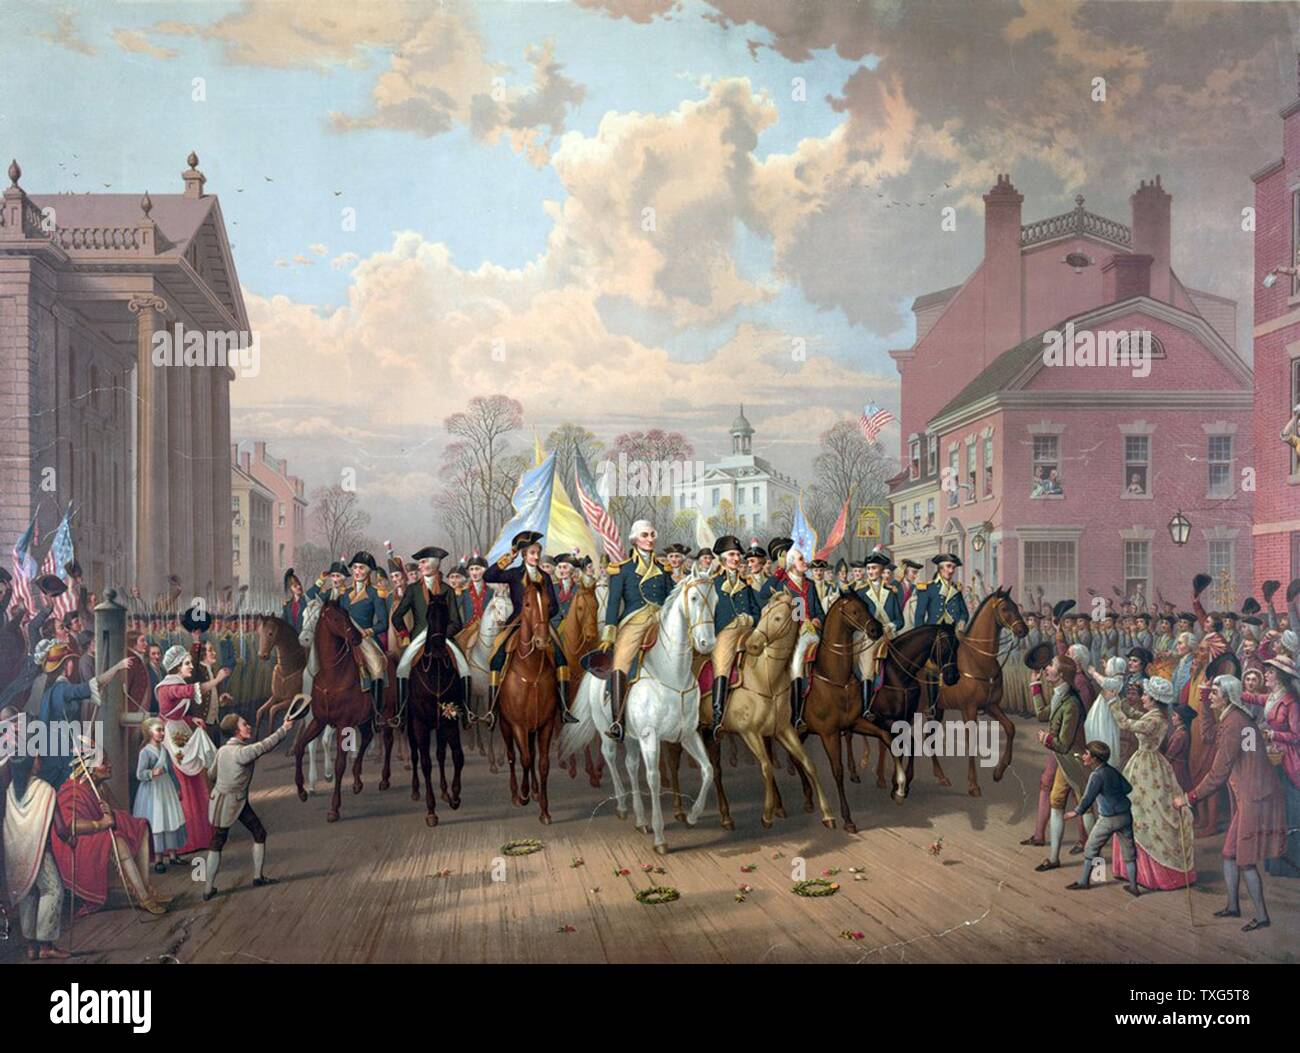 La guerre révolutionnaire de 1775-1783 (Guerre d'Indépendance américaine) : George Washington à cheval en triomphe dans les rues de Boston après 11 mois de siège a pris fin avec le retrait (évacuation) des forces britanniques chromolithographie Banque D'Images